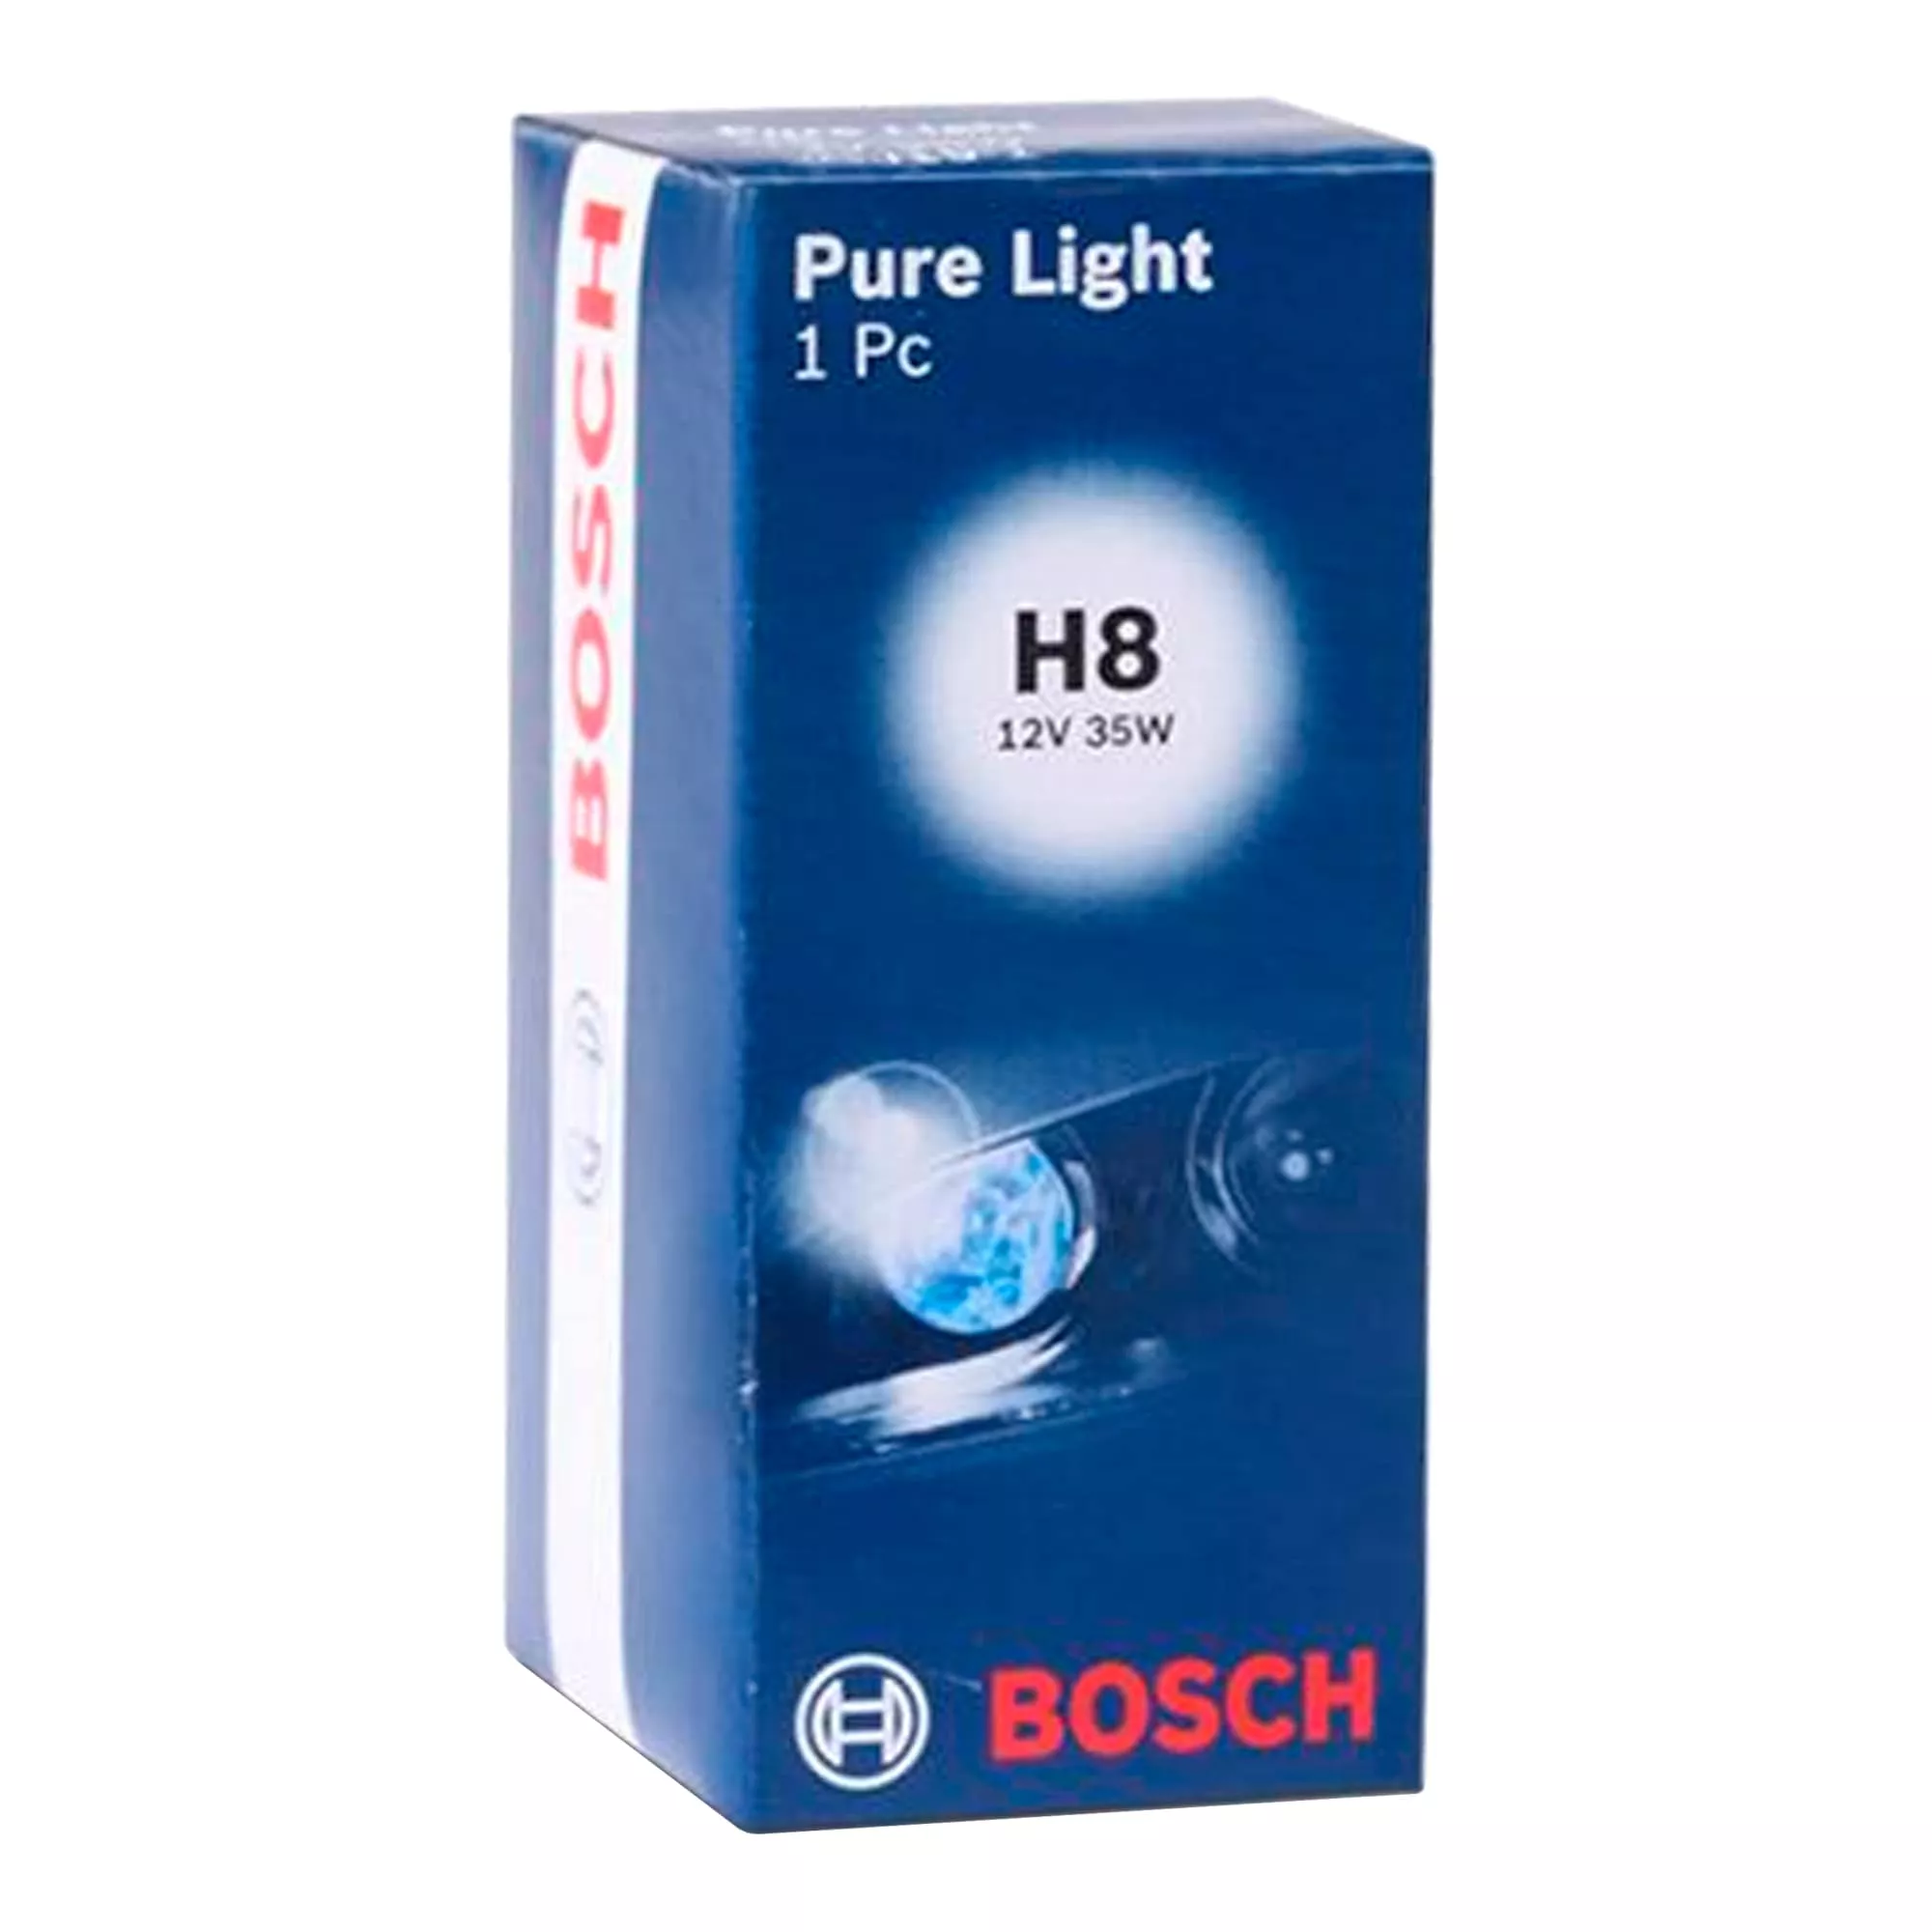 Лампа Bosch Pure Light H8 12V 35W 1987302081